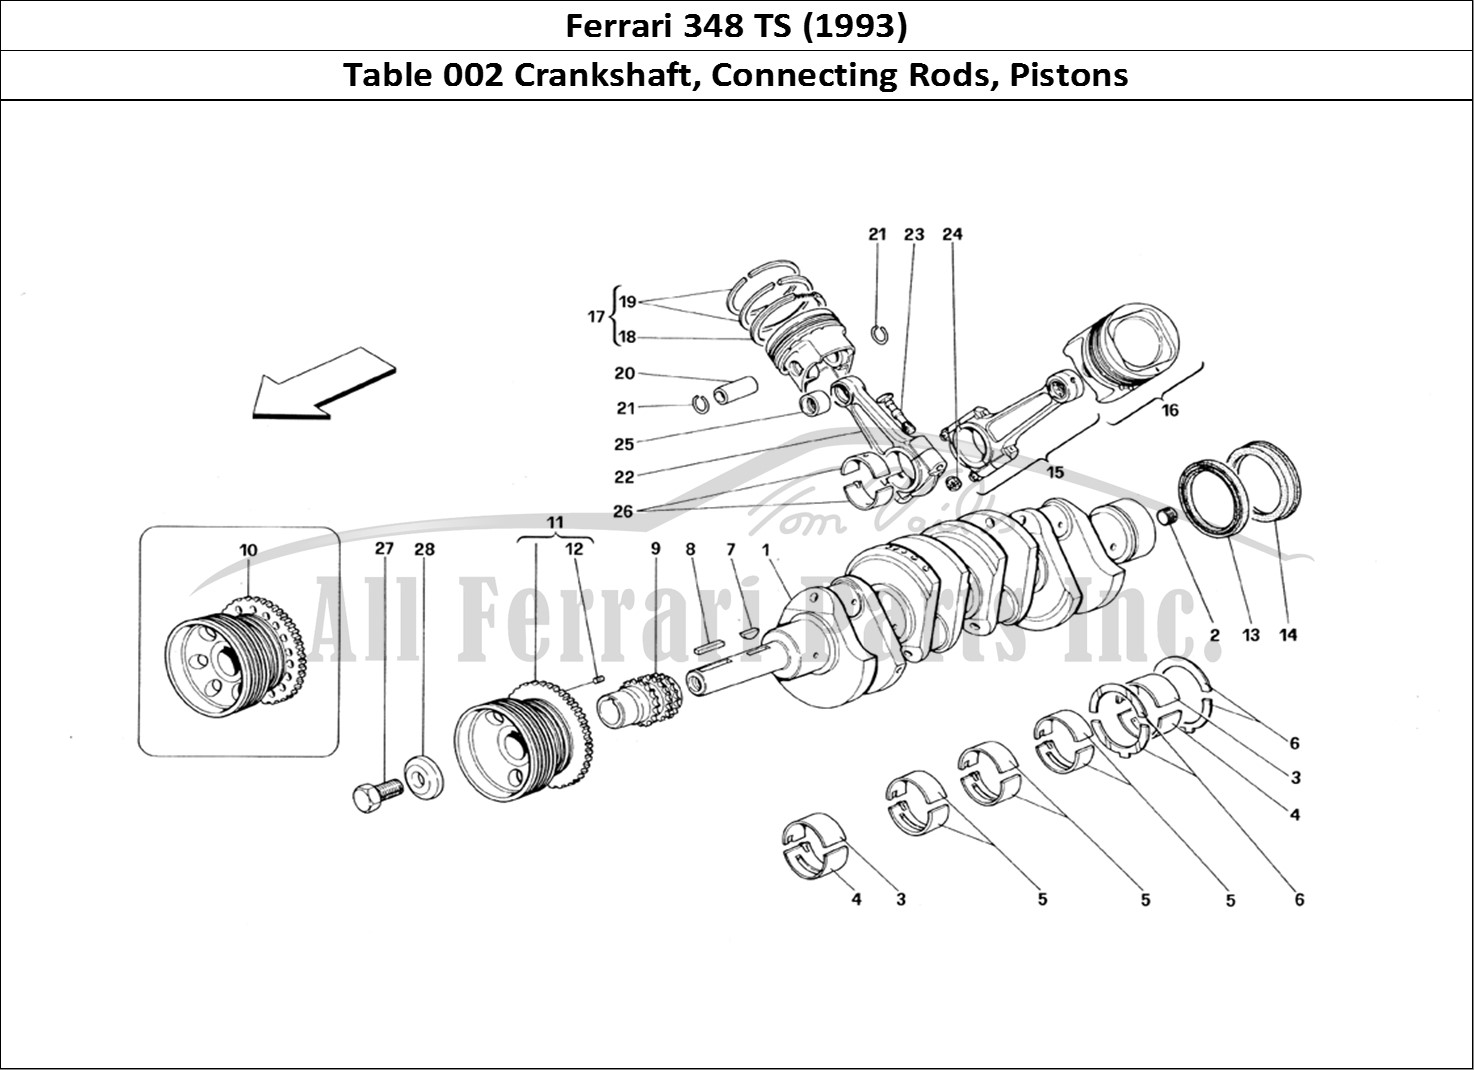 Ferrari Parts Ferrari 348 TB (1993) Page 002 Crankshaft, Conrods And P